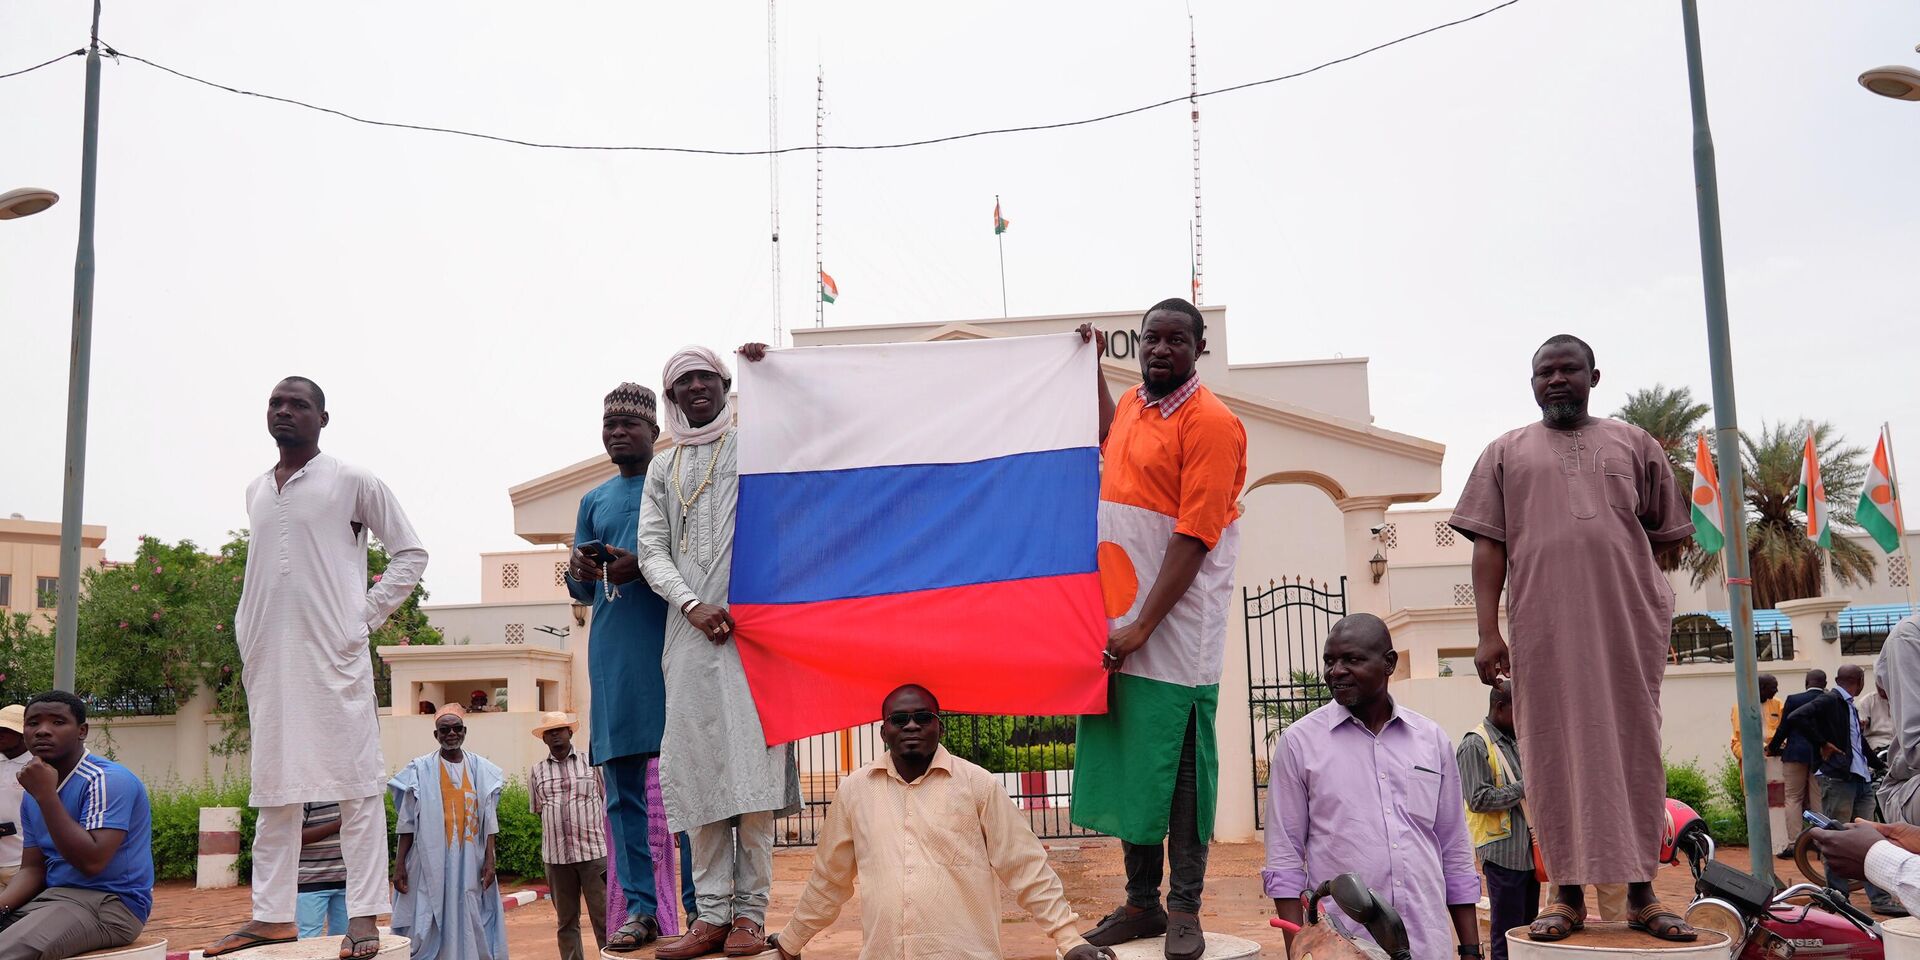 Участники демонстрации в Ниамее, Нигер. 27 июля 2023 года - ИноСМИ, 1920, 20.08.2023